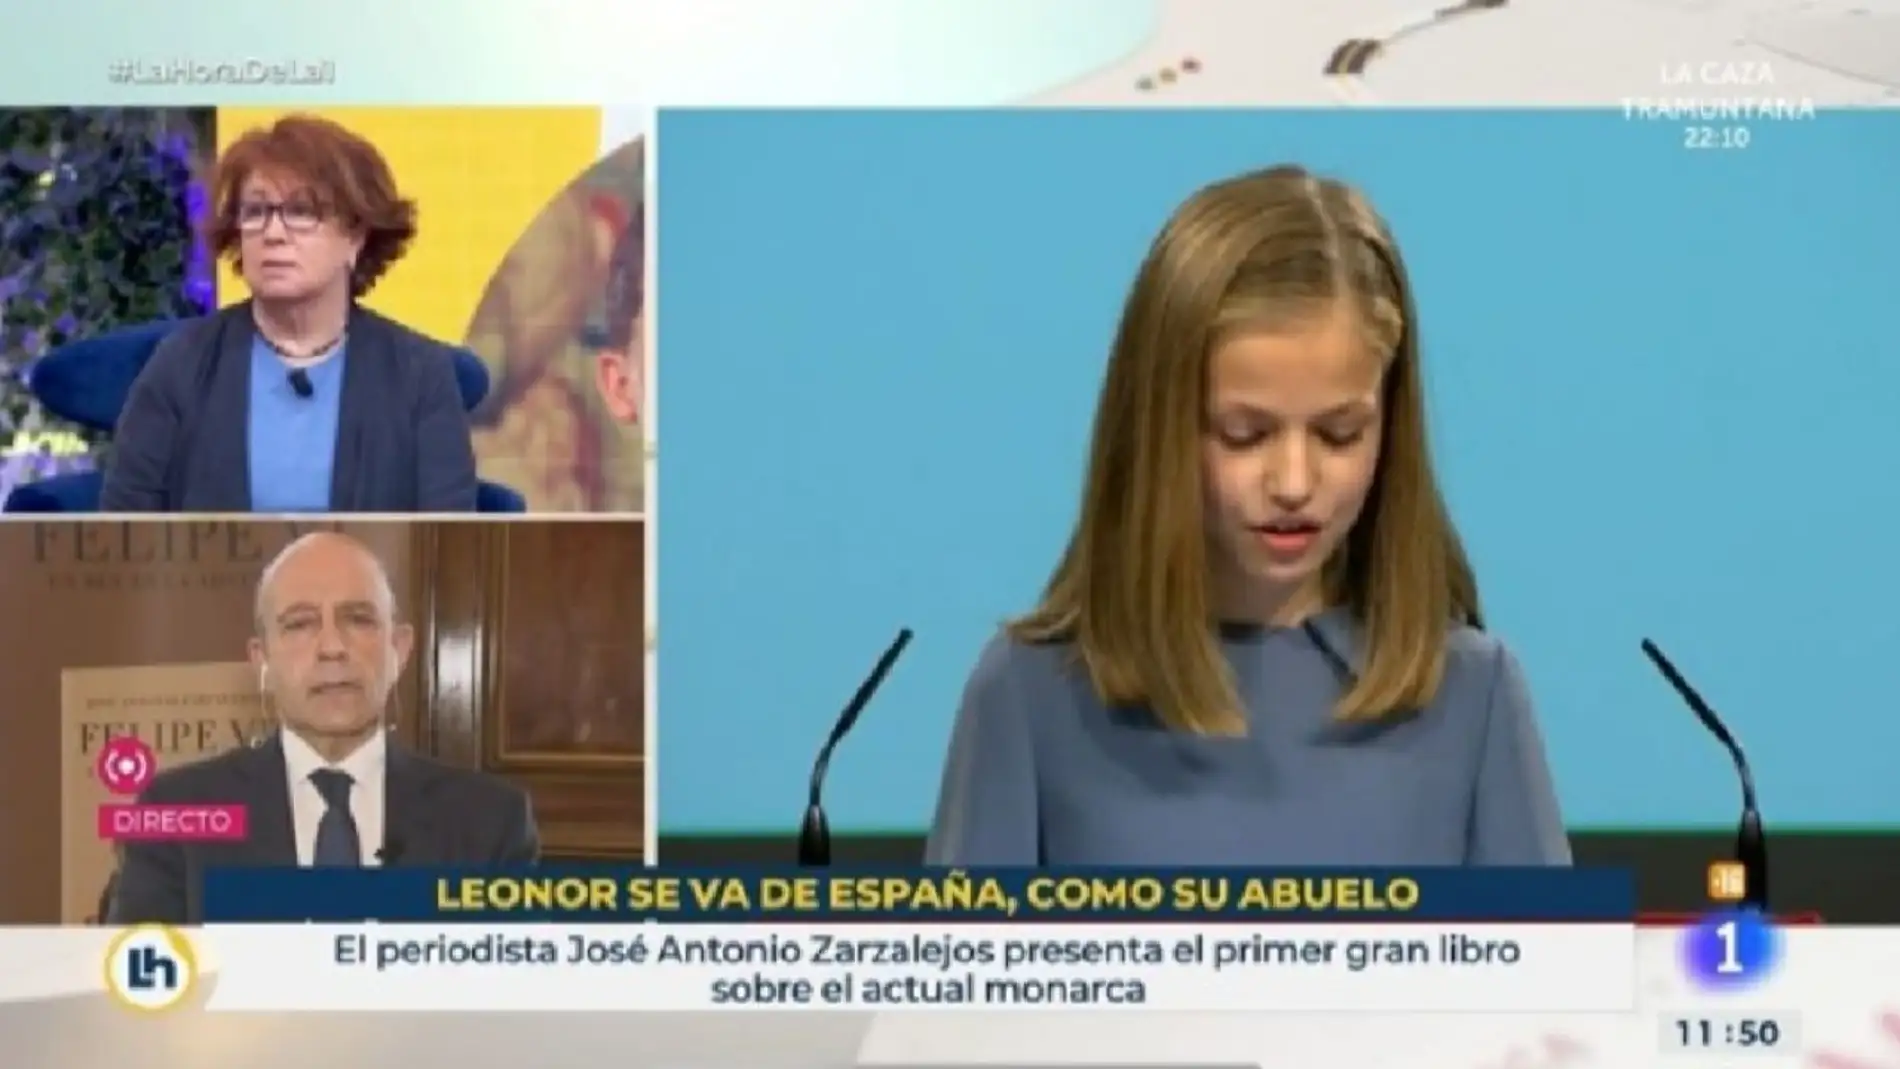 La Justicia declara nulo el cese del guionista de TVE por el polémico rótulo "Leonor se vea de España, como su abuelo"